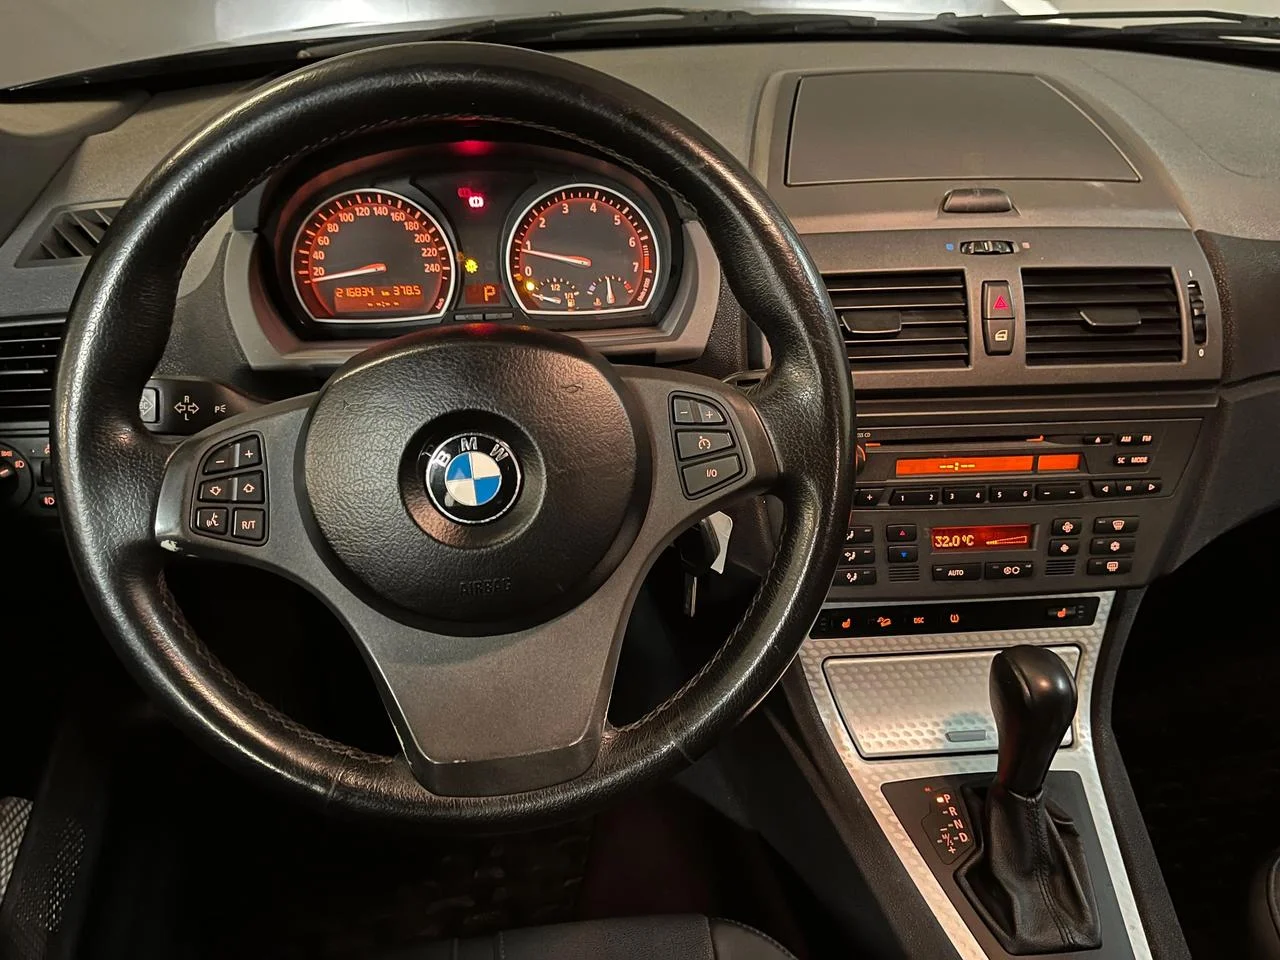 BMW X3 2.5i Automatisk, 192hk, 2004